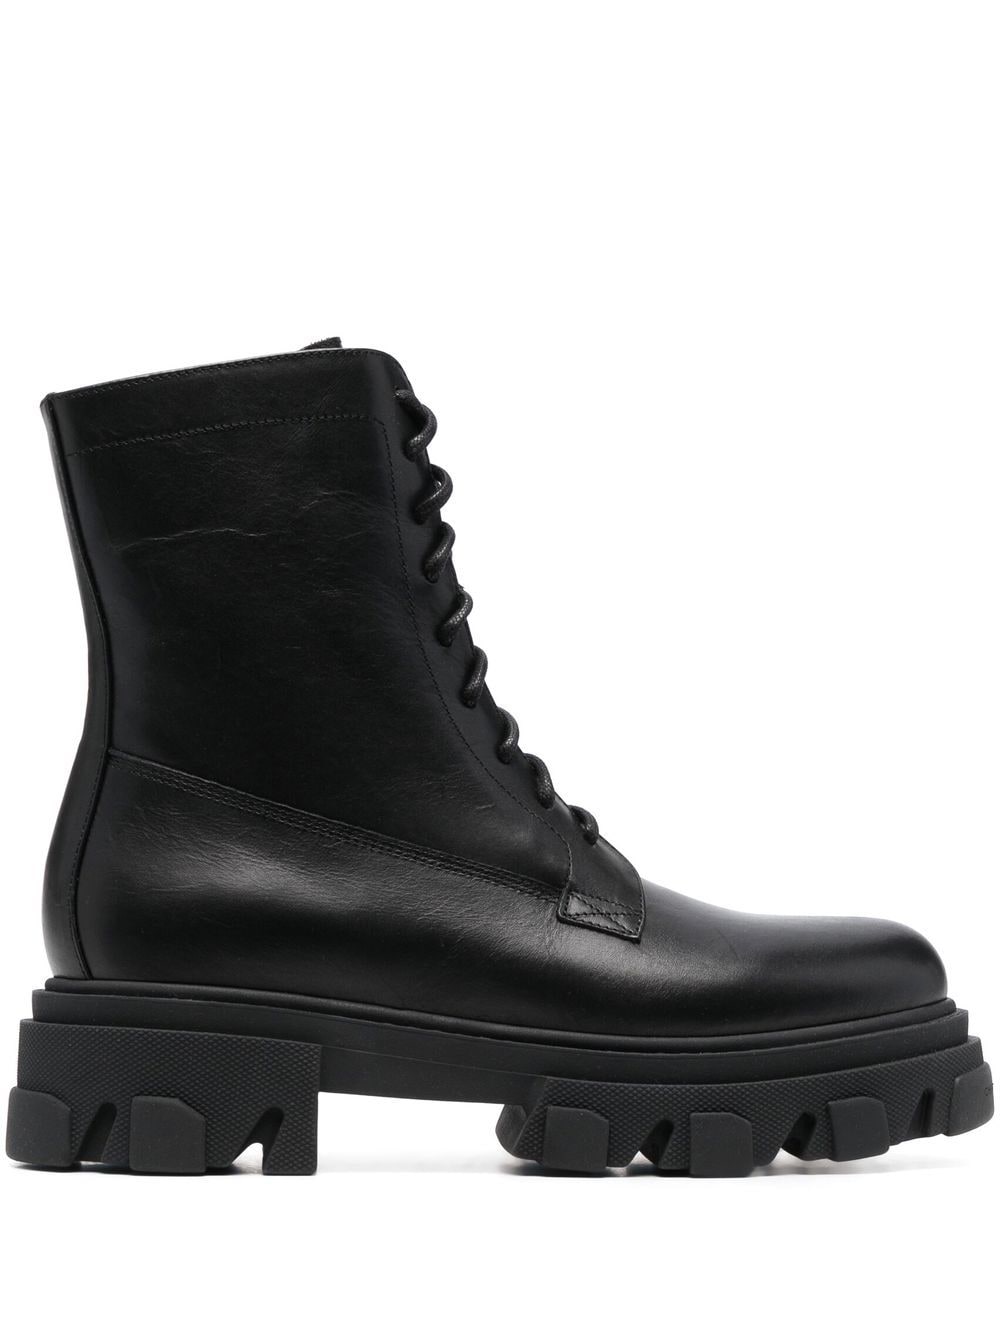 Chiara Ferragni leather lace up boots - Black von Chiara Ferragni